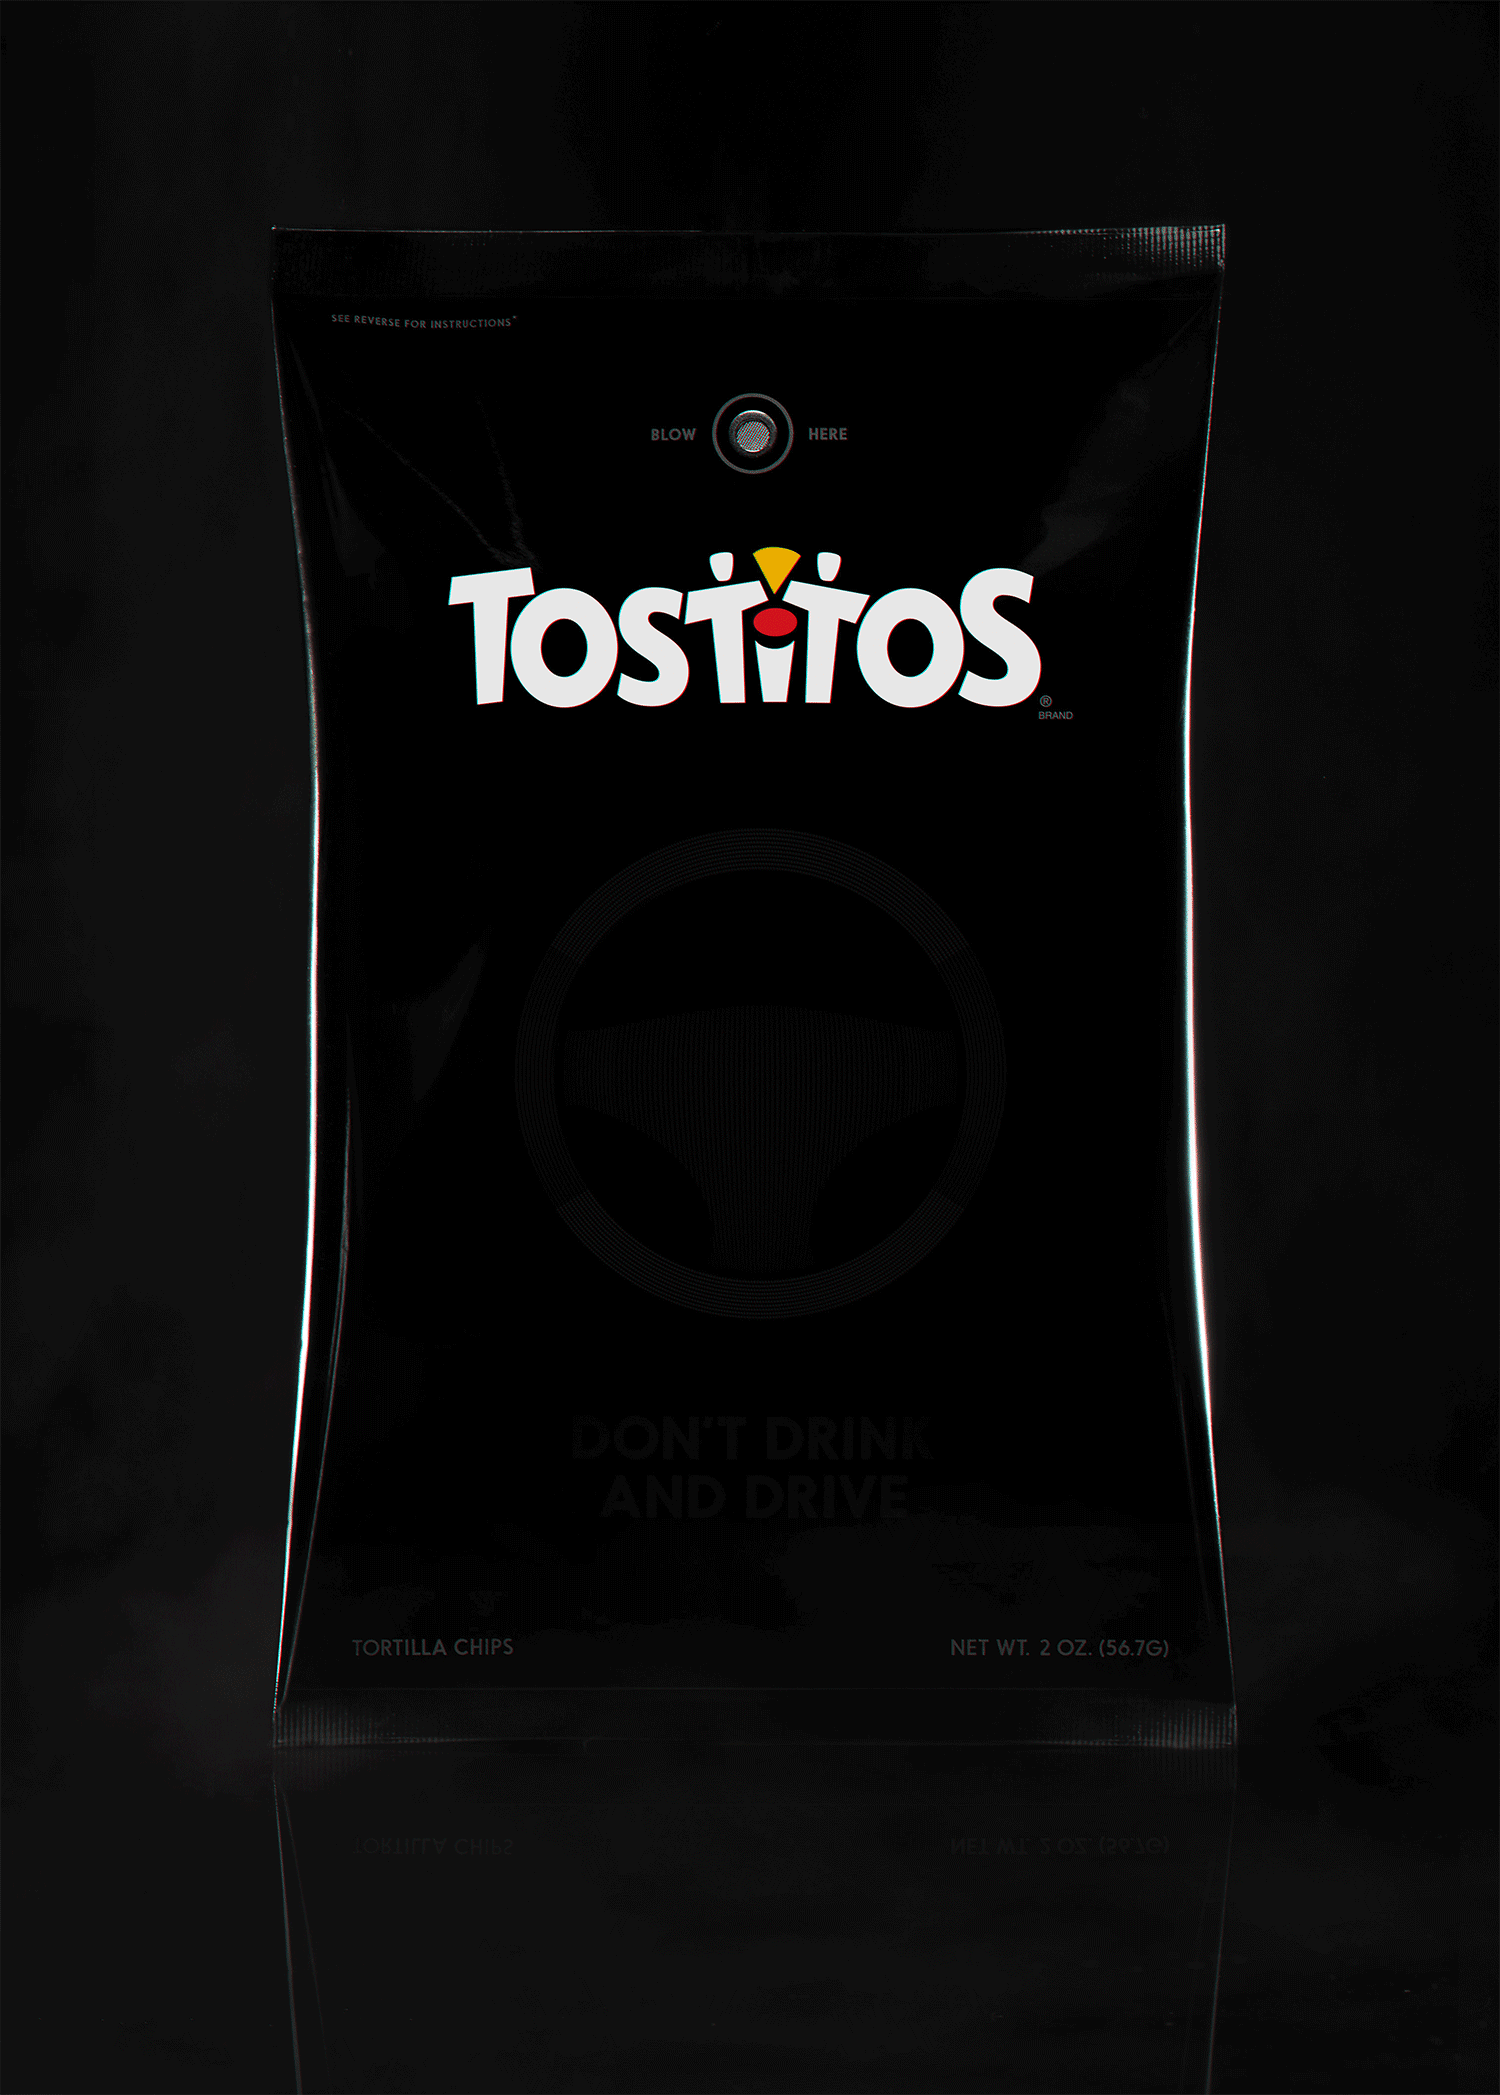 tostitos-party-bag